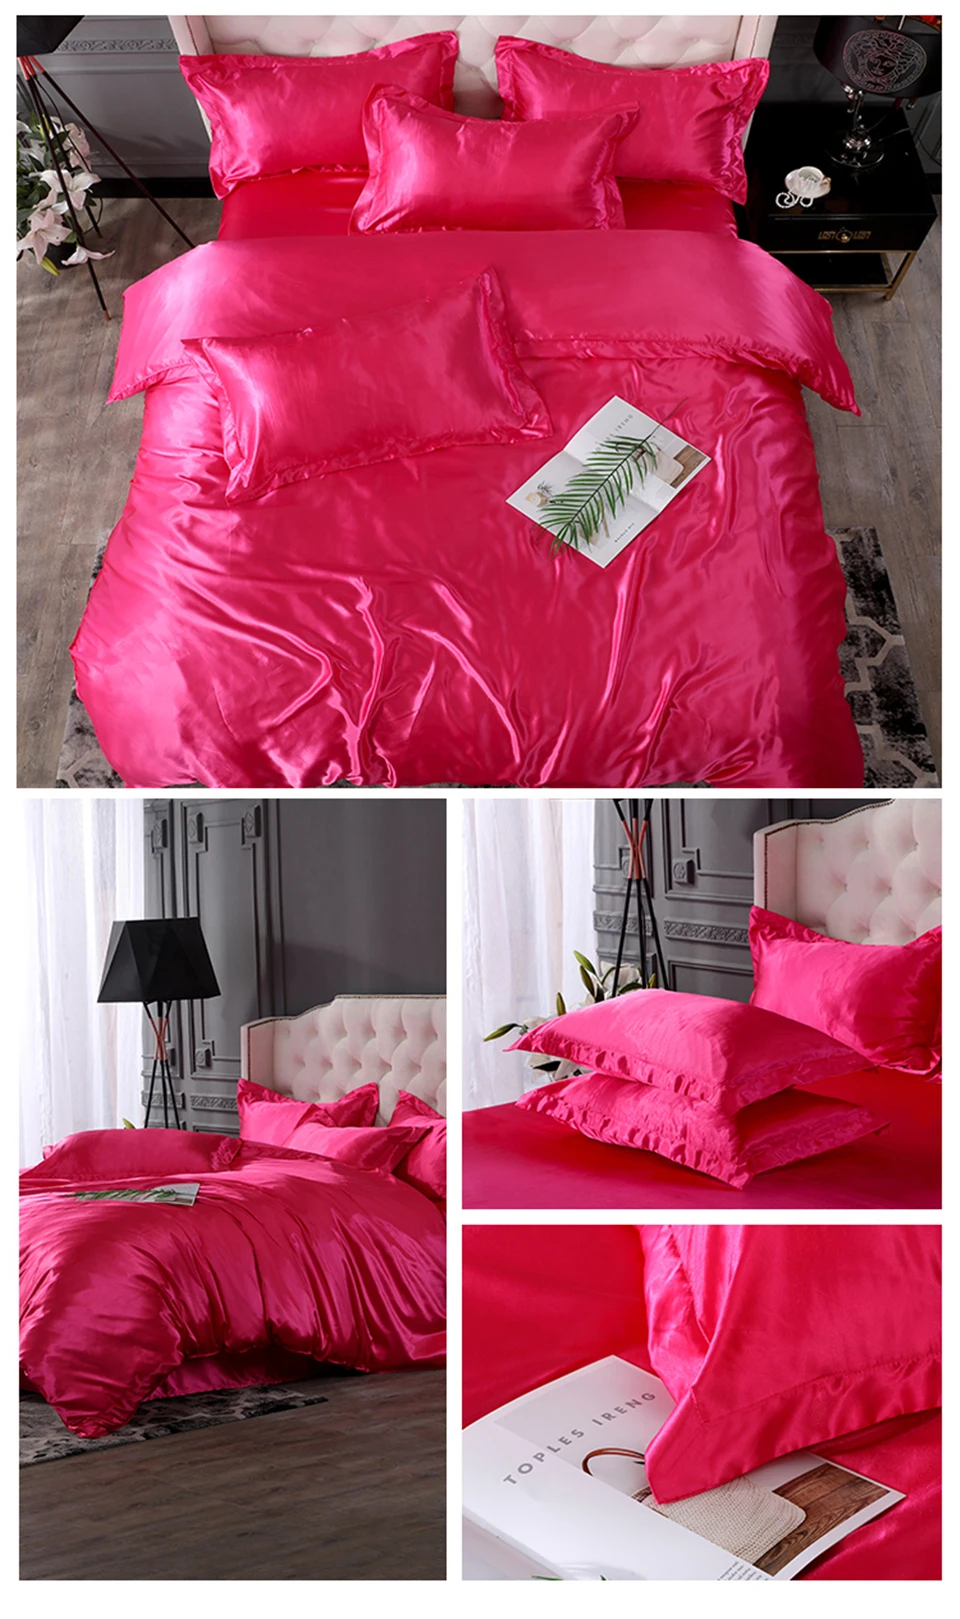 Sloodream красный комплект постельного белья атласное шелковое роскошное покрывало, простыня, наволочка, постельное белье, пододеяльник, набор постельного белья